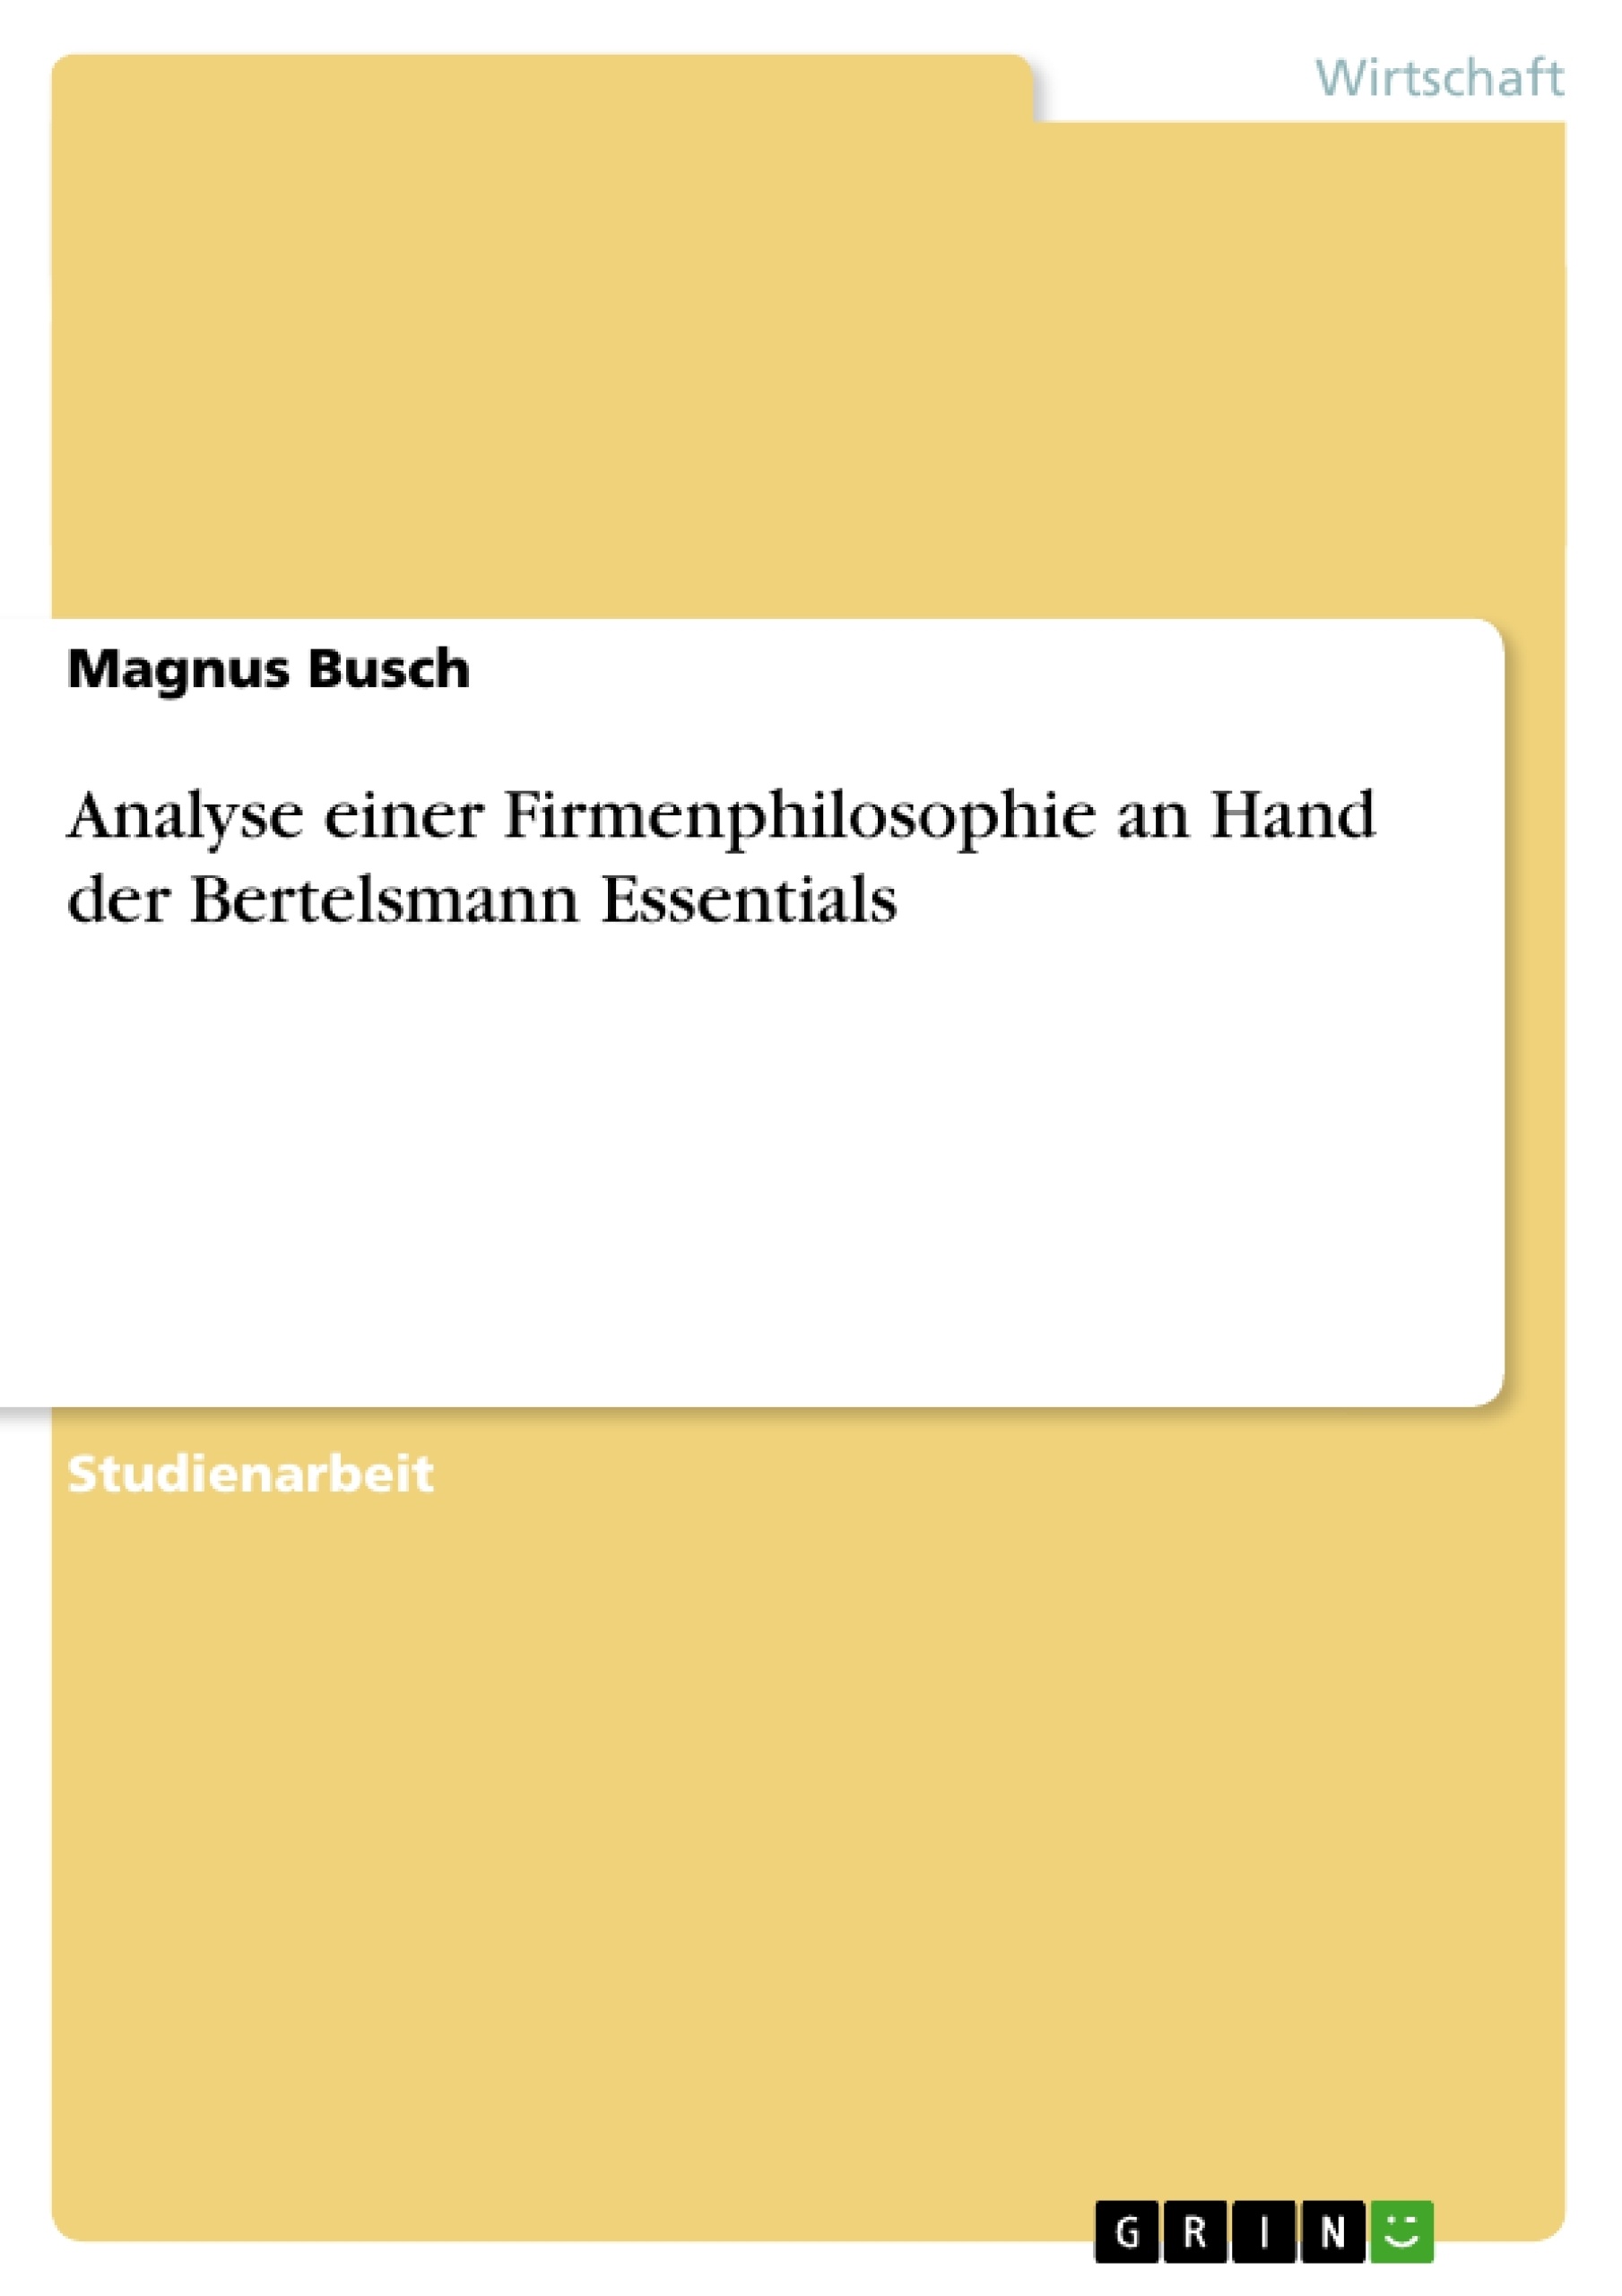 Título: Analyse einer Firmenphilosophie an Hand der Bertelsmann Essentials